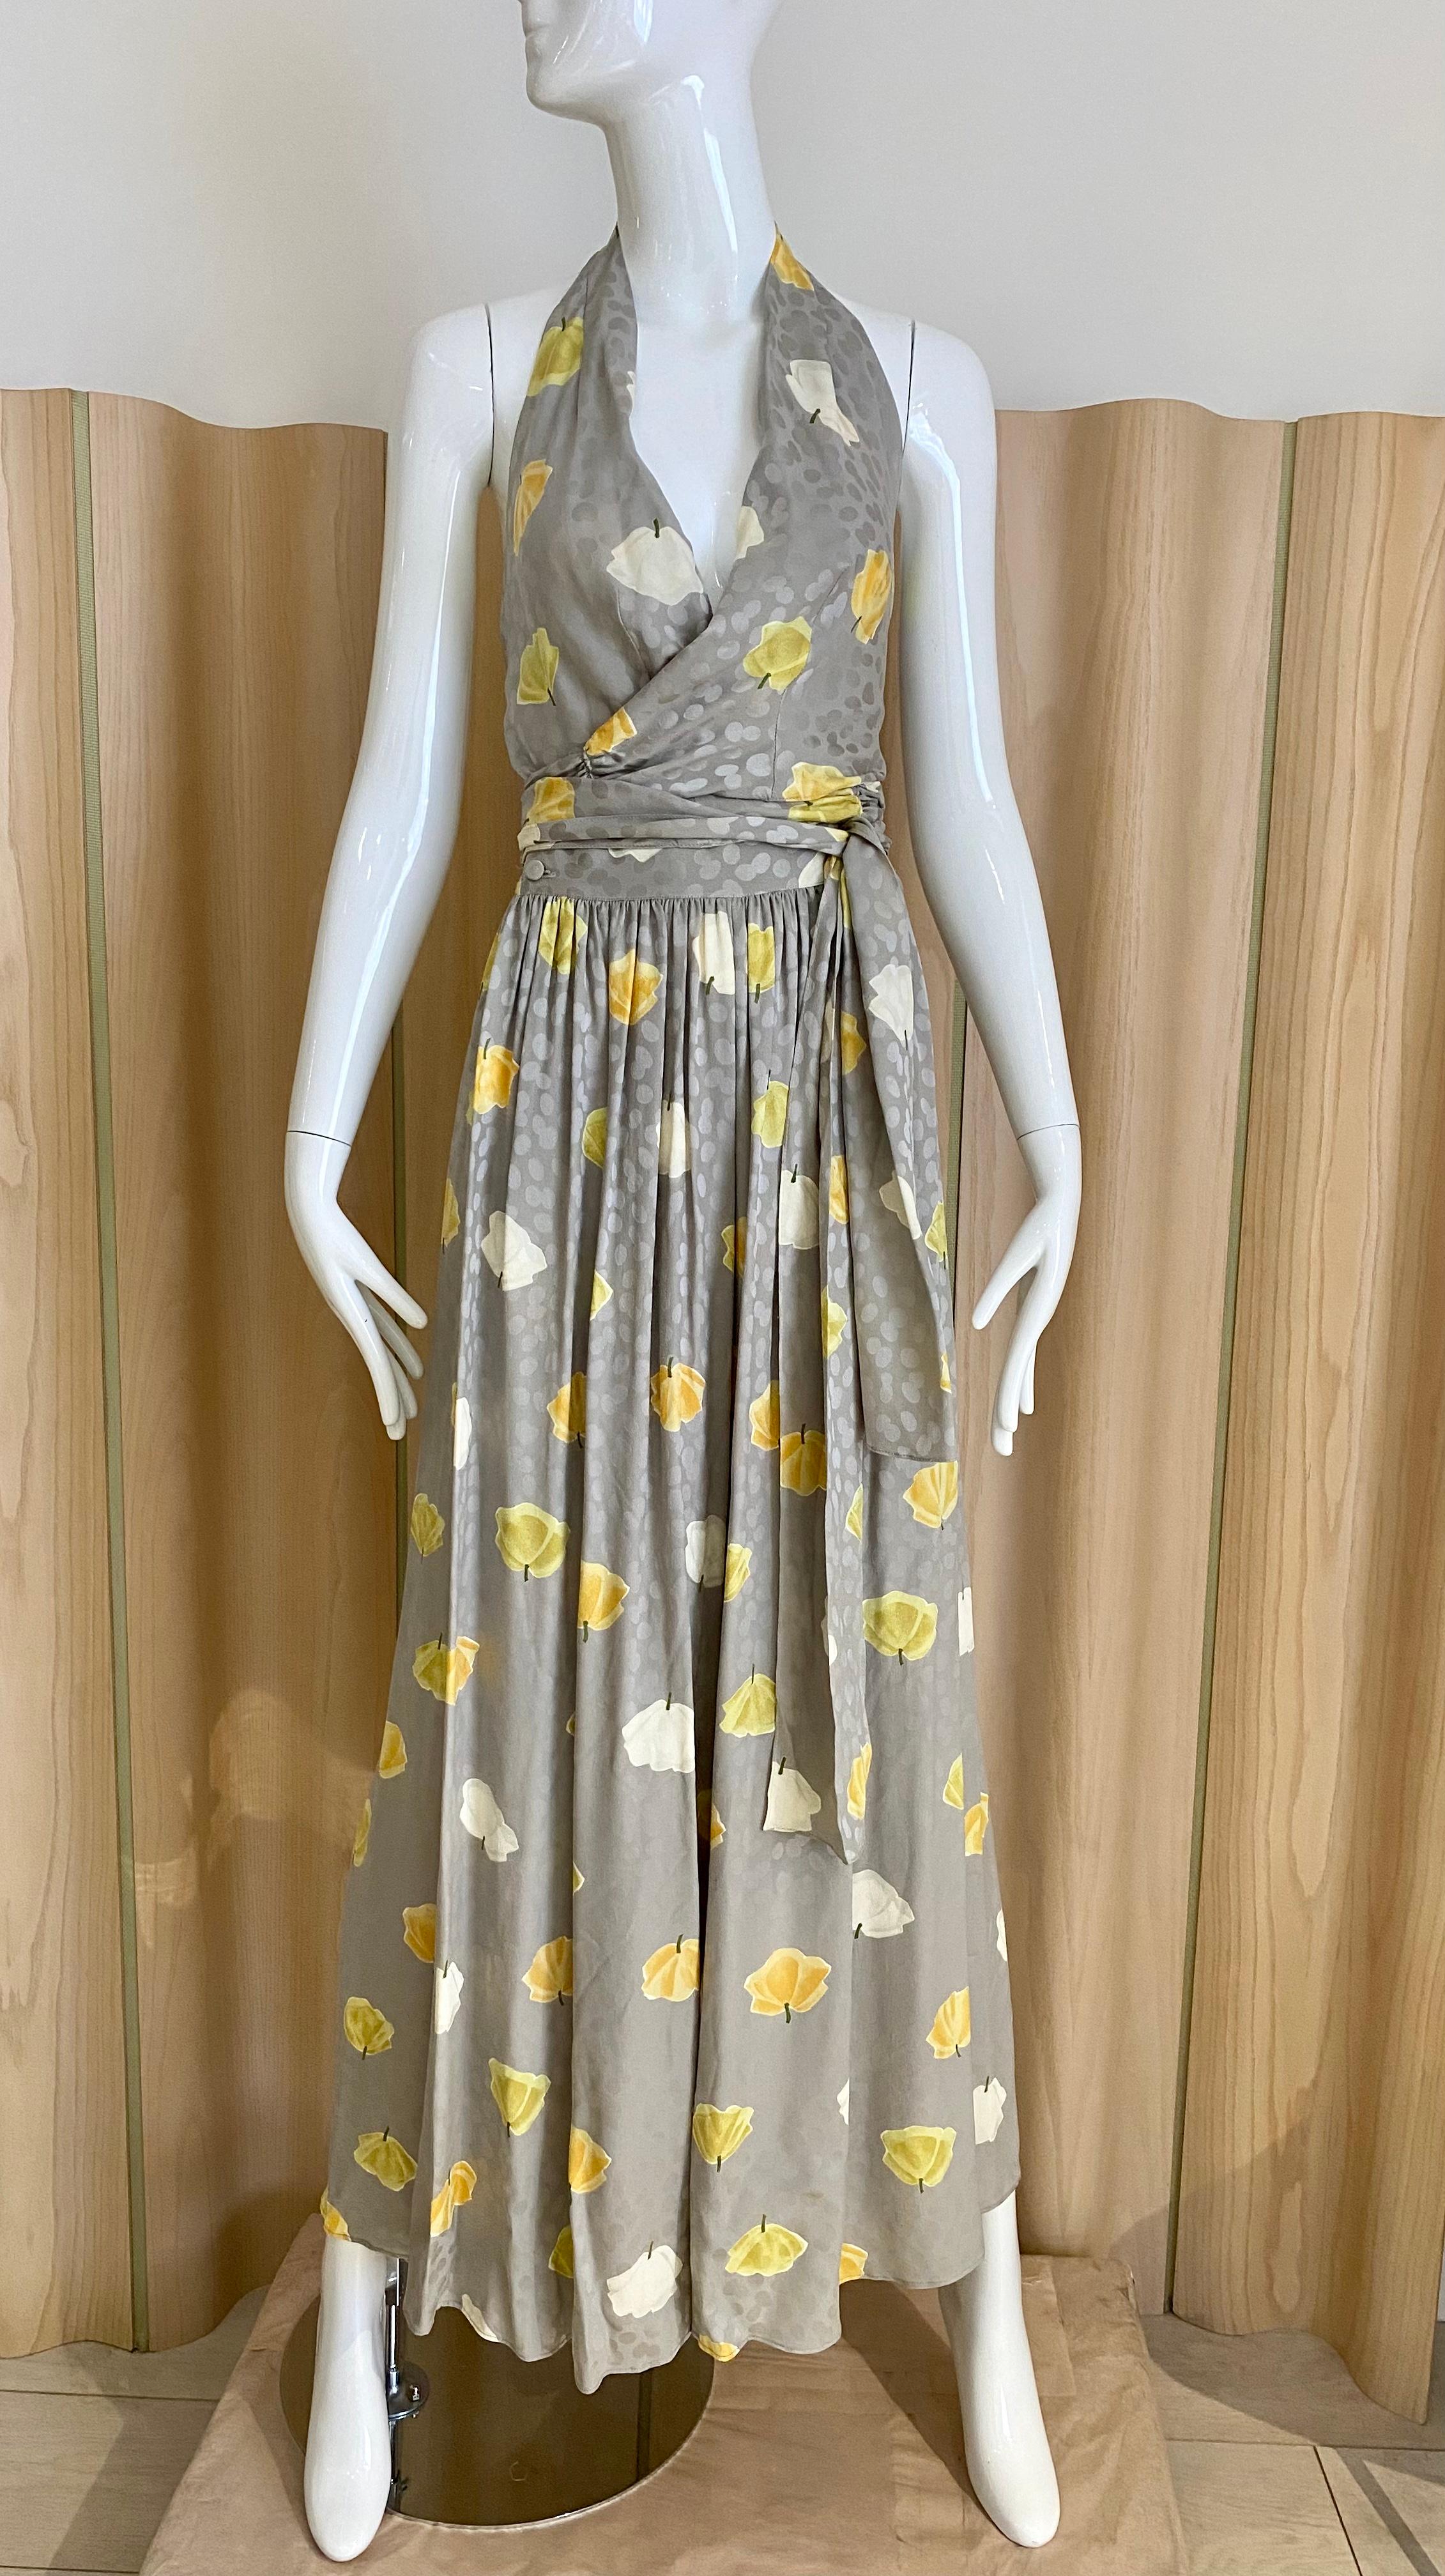 Années 1970 Adele Simpson Soie grise Imprimé floral en jaune et blanc.
Top en soie à dos nu et pantalon à jambes larges. L'ensemble est accompagné d'un magnifique châle à franges en soie. Parfait pour un cocktail d'été ou une répétition de